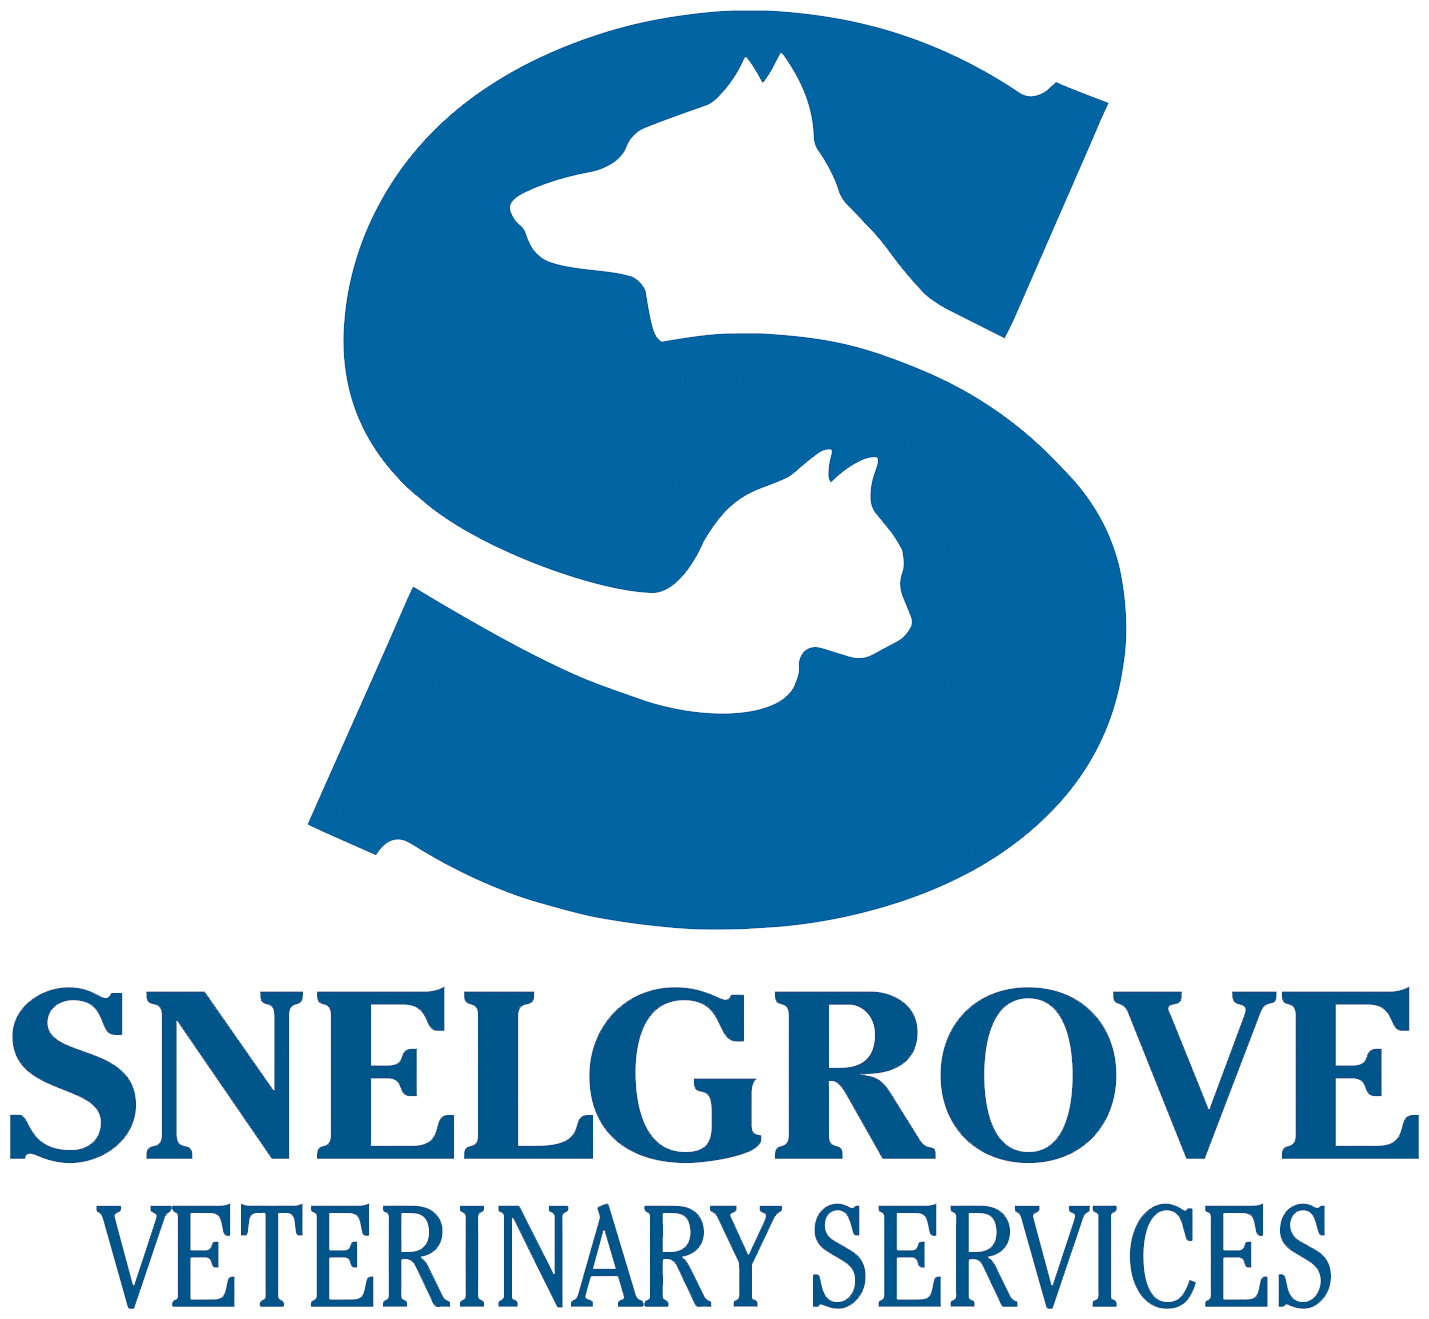 Snelgrove Veterinary Services